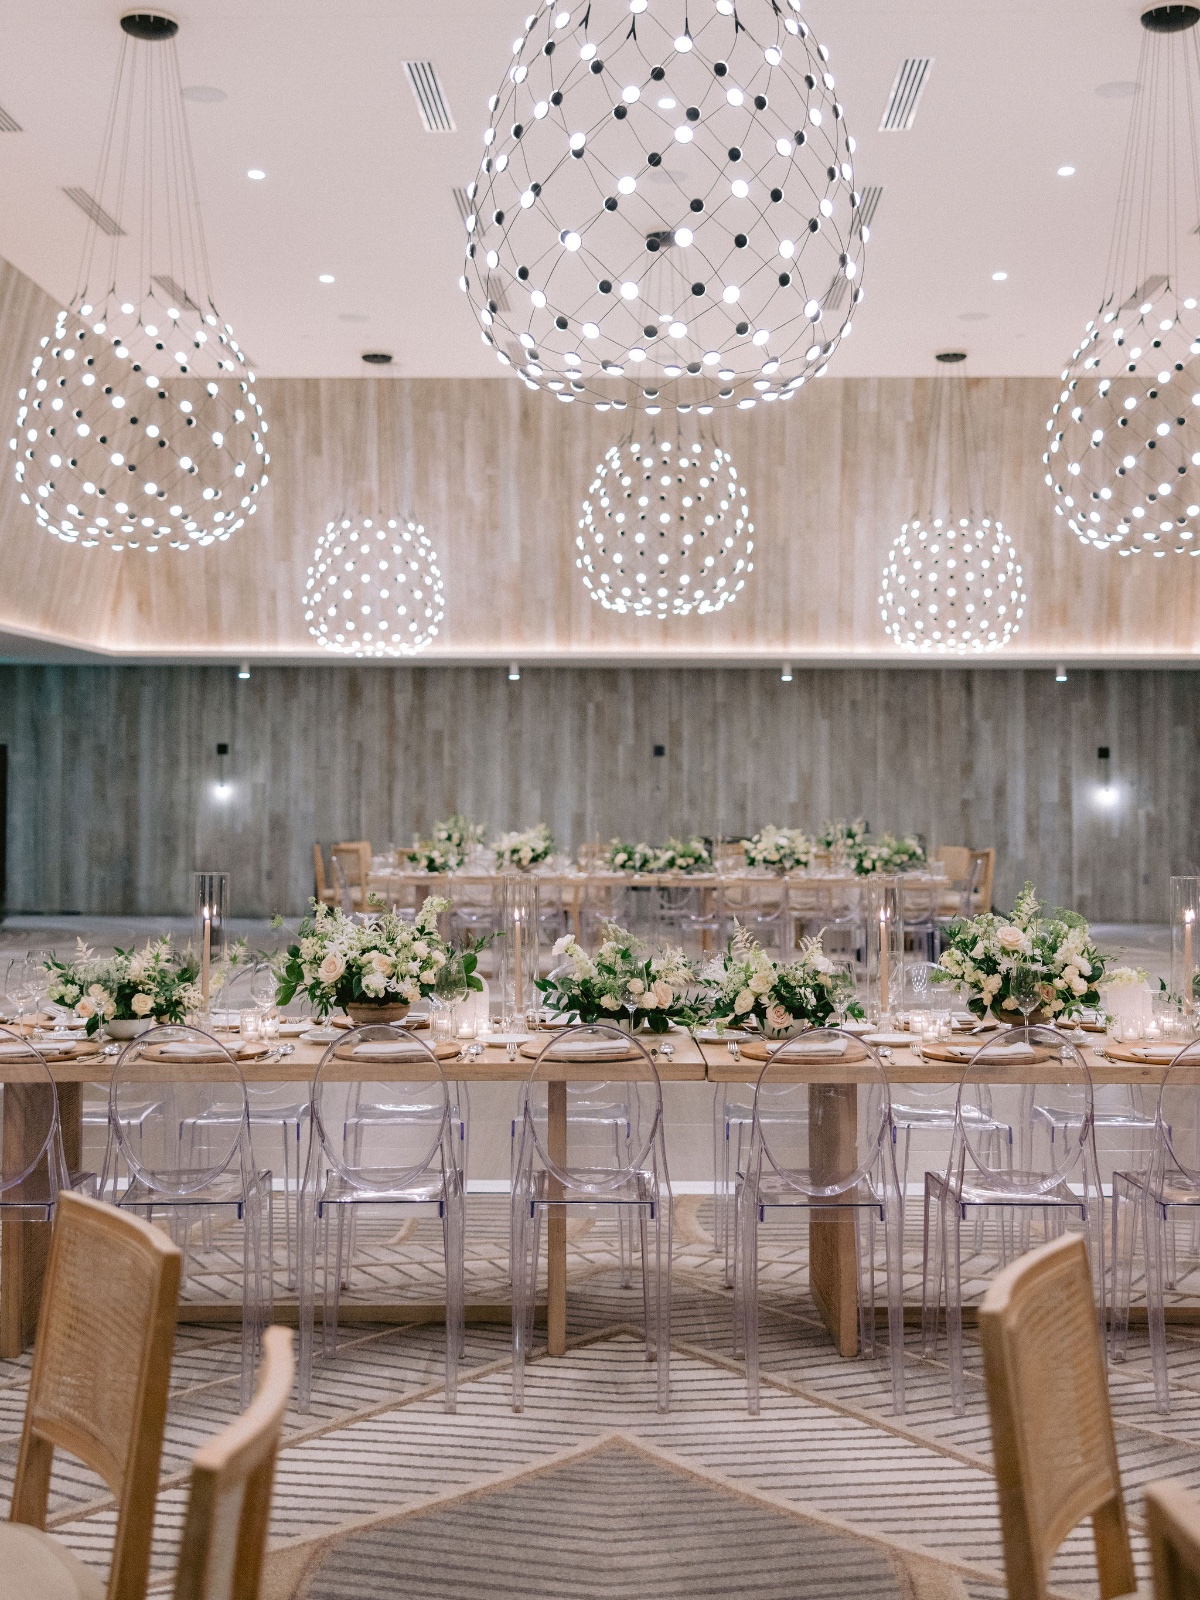 Modern chandelier wedding reception